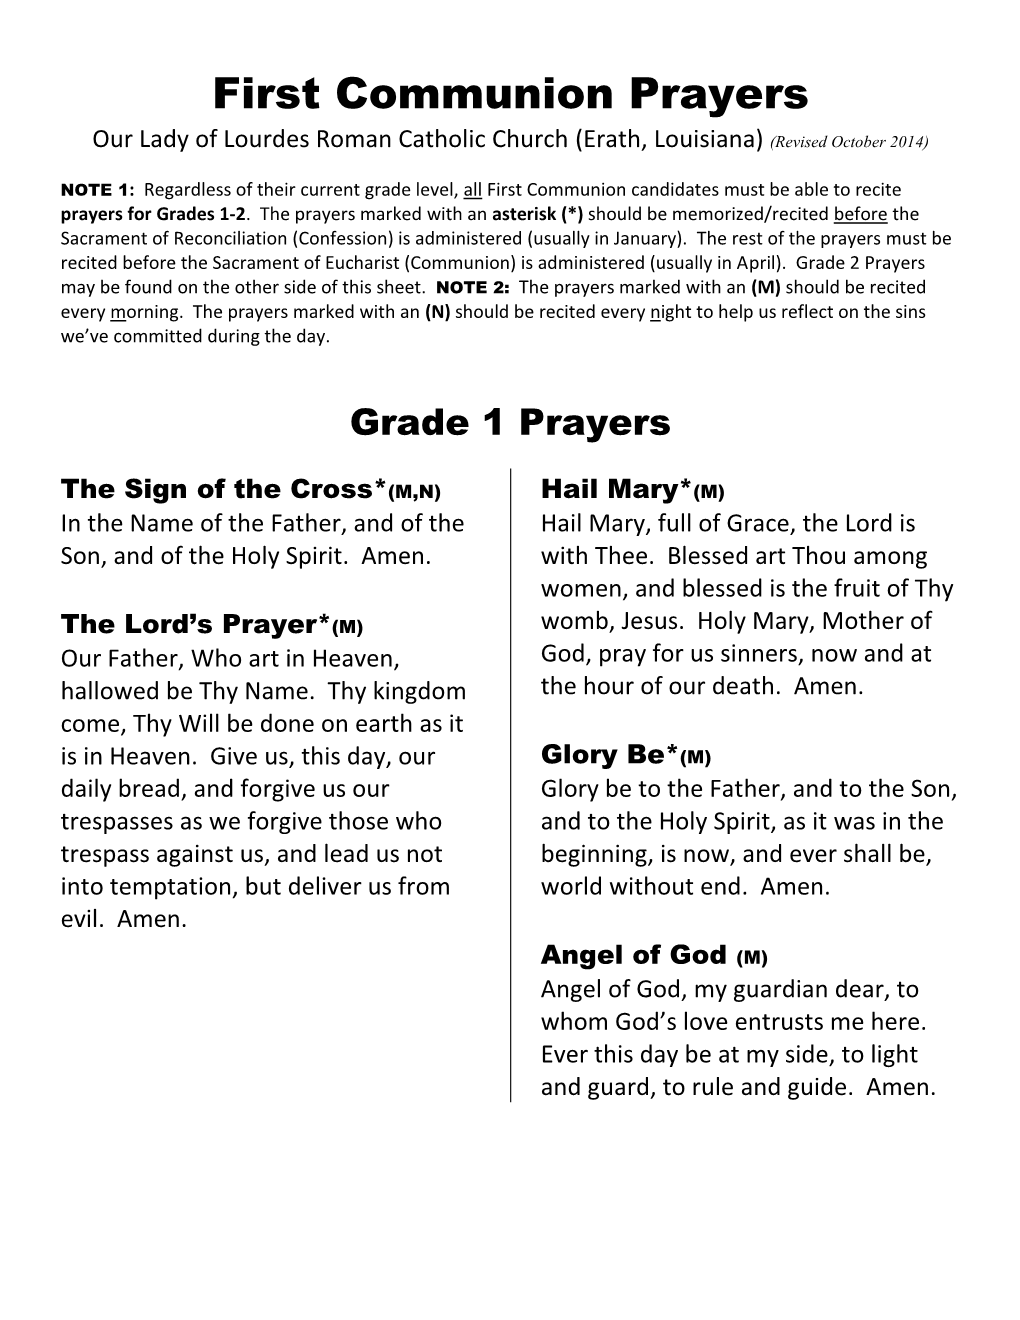 First Communion Prayer Sheet